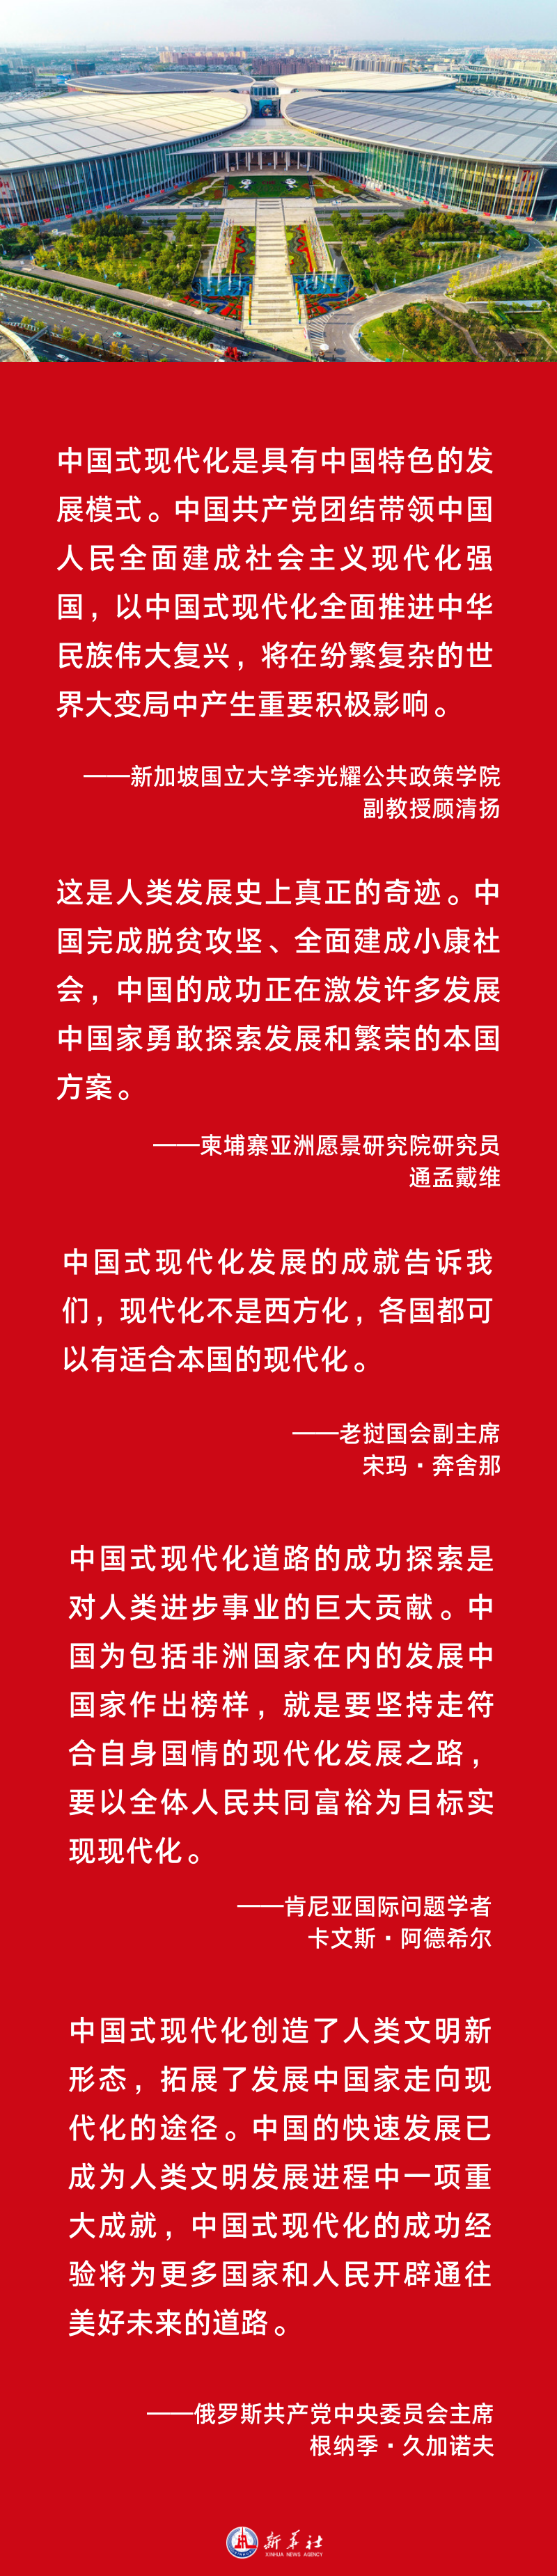 海报 | “这是人类发展史上真正的奇迹”——国际社会热议中国式现代化的世界意义